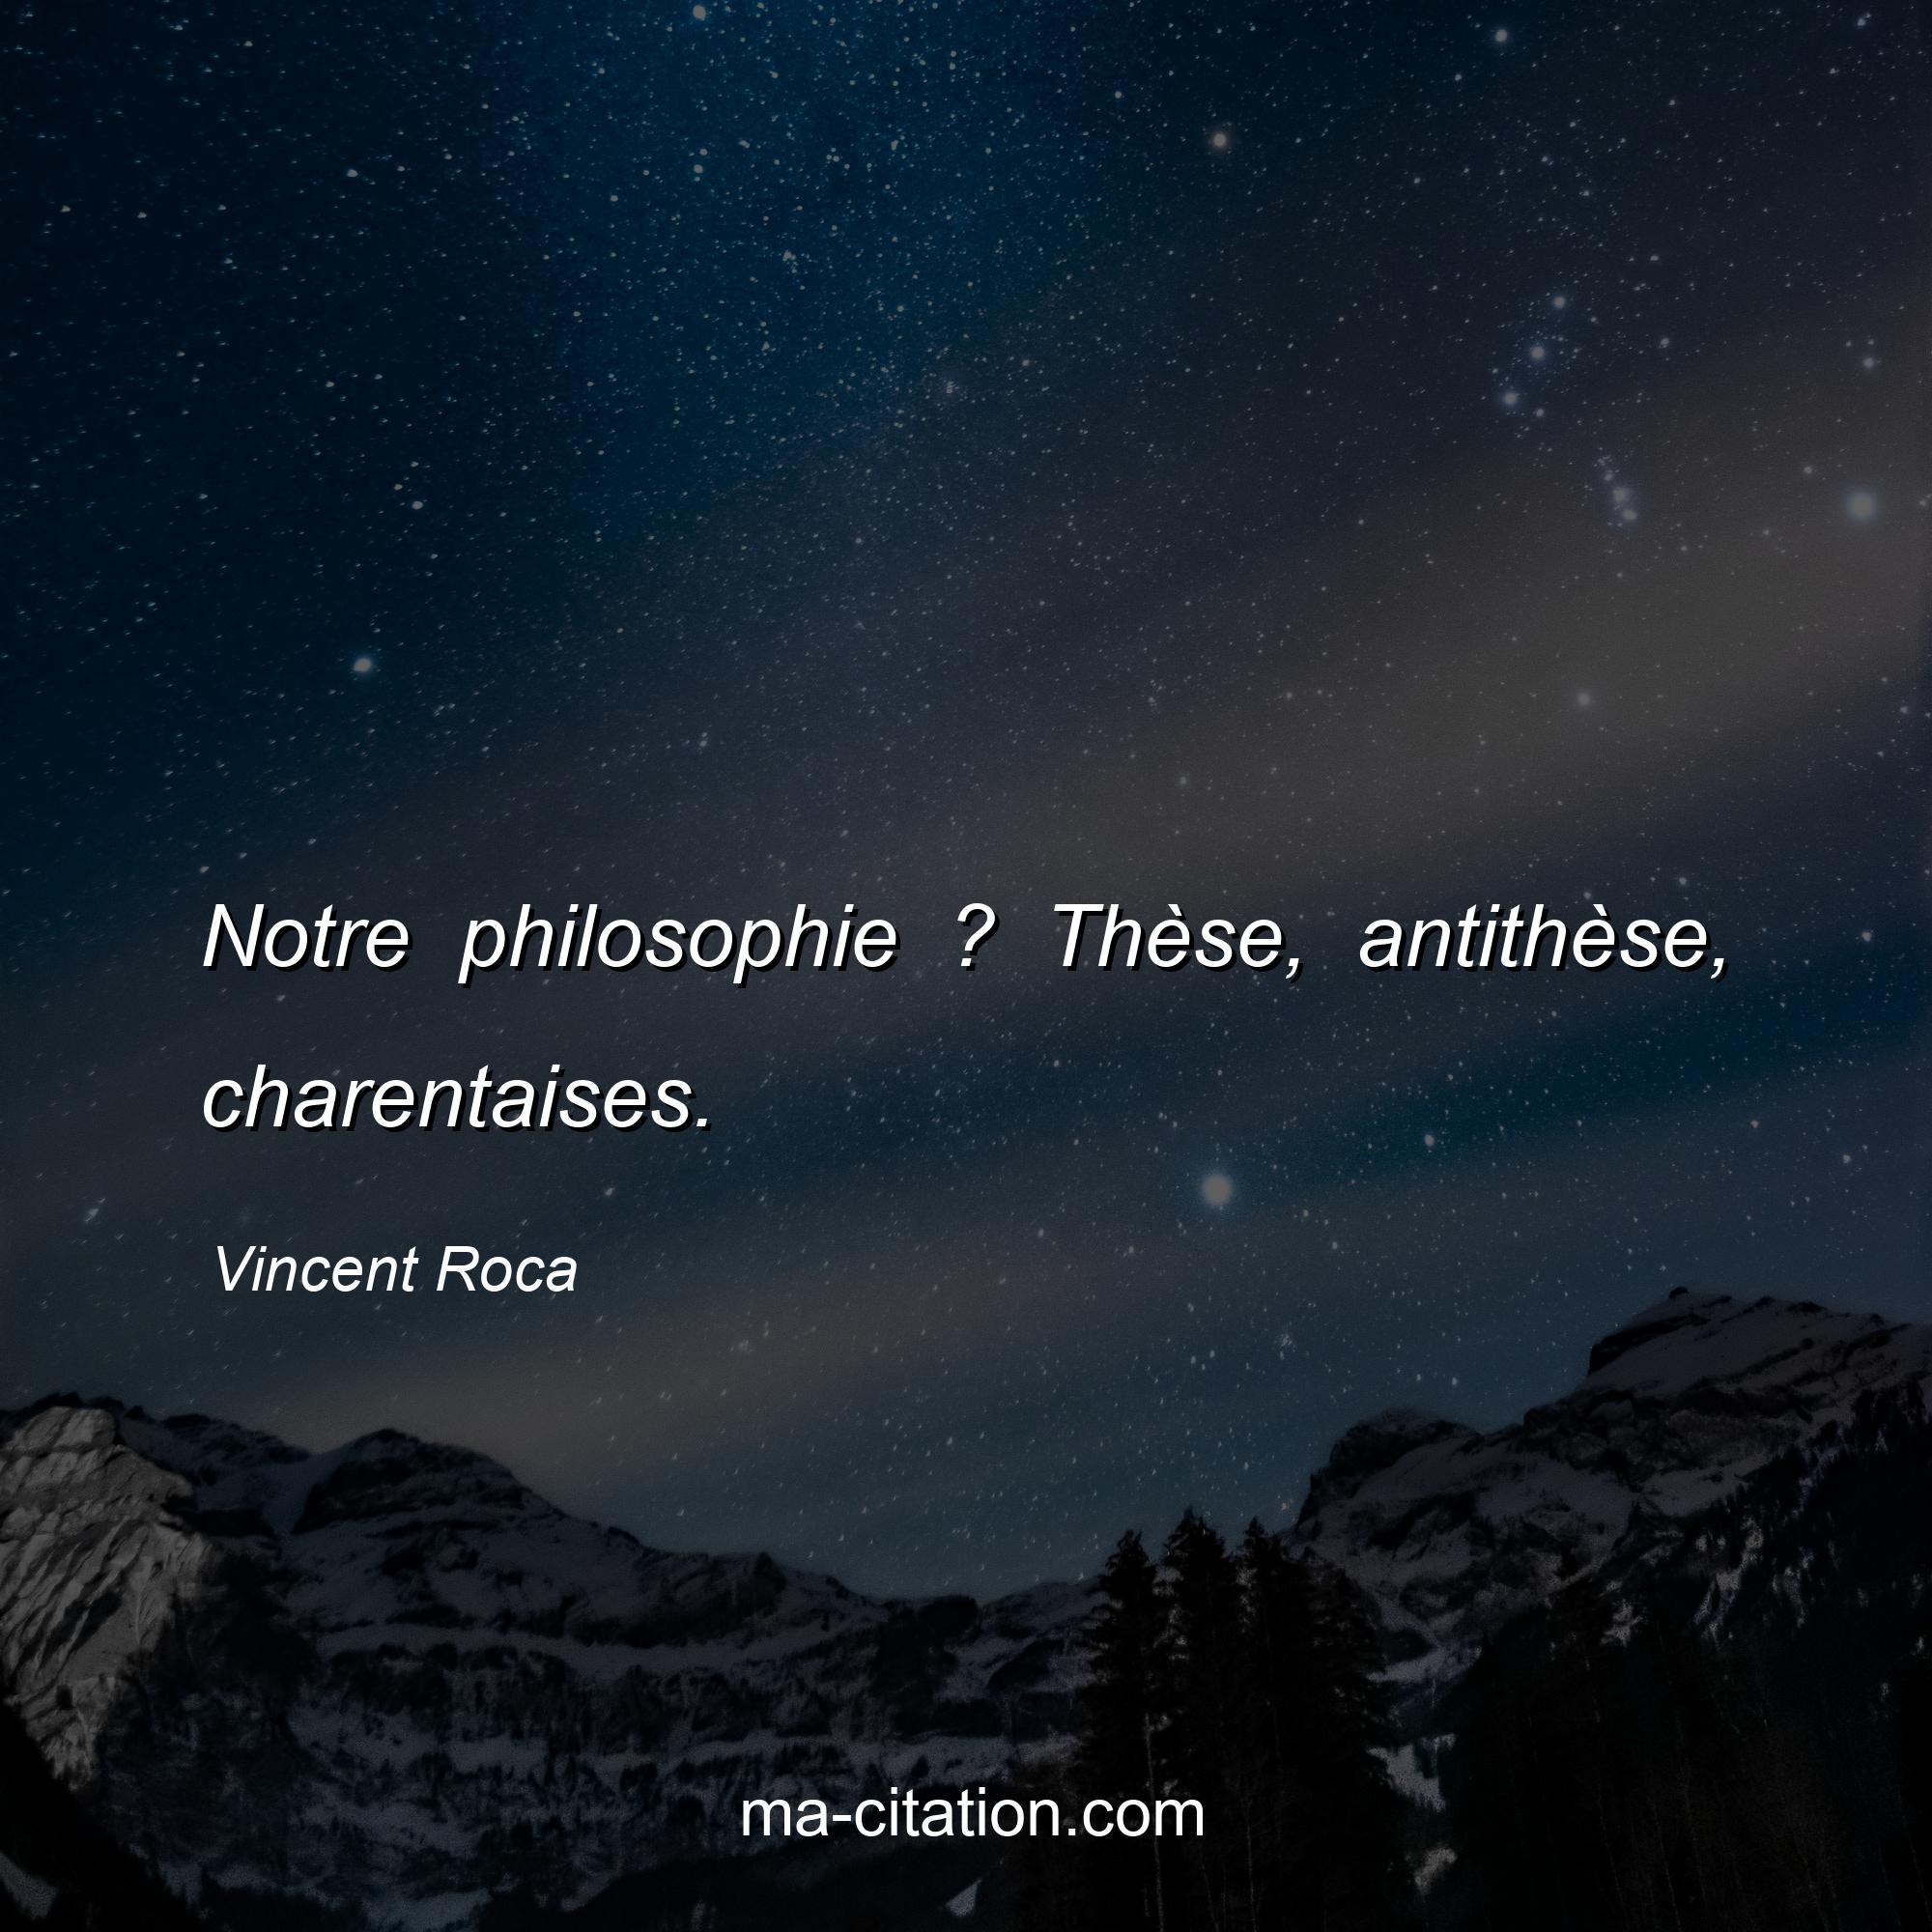 Vincent Roca : Notre philosophie ? Thèse, antithèse, charentaises.